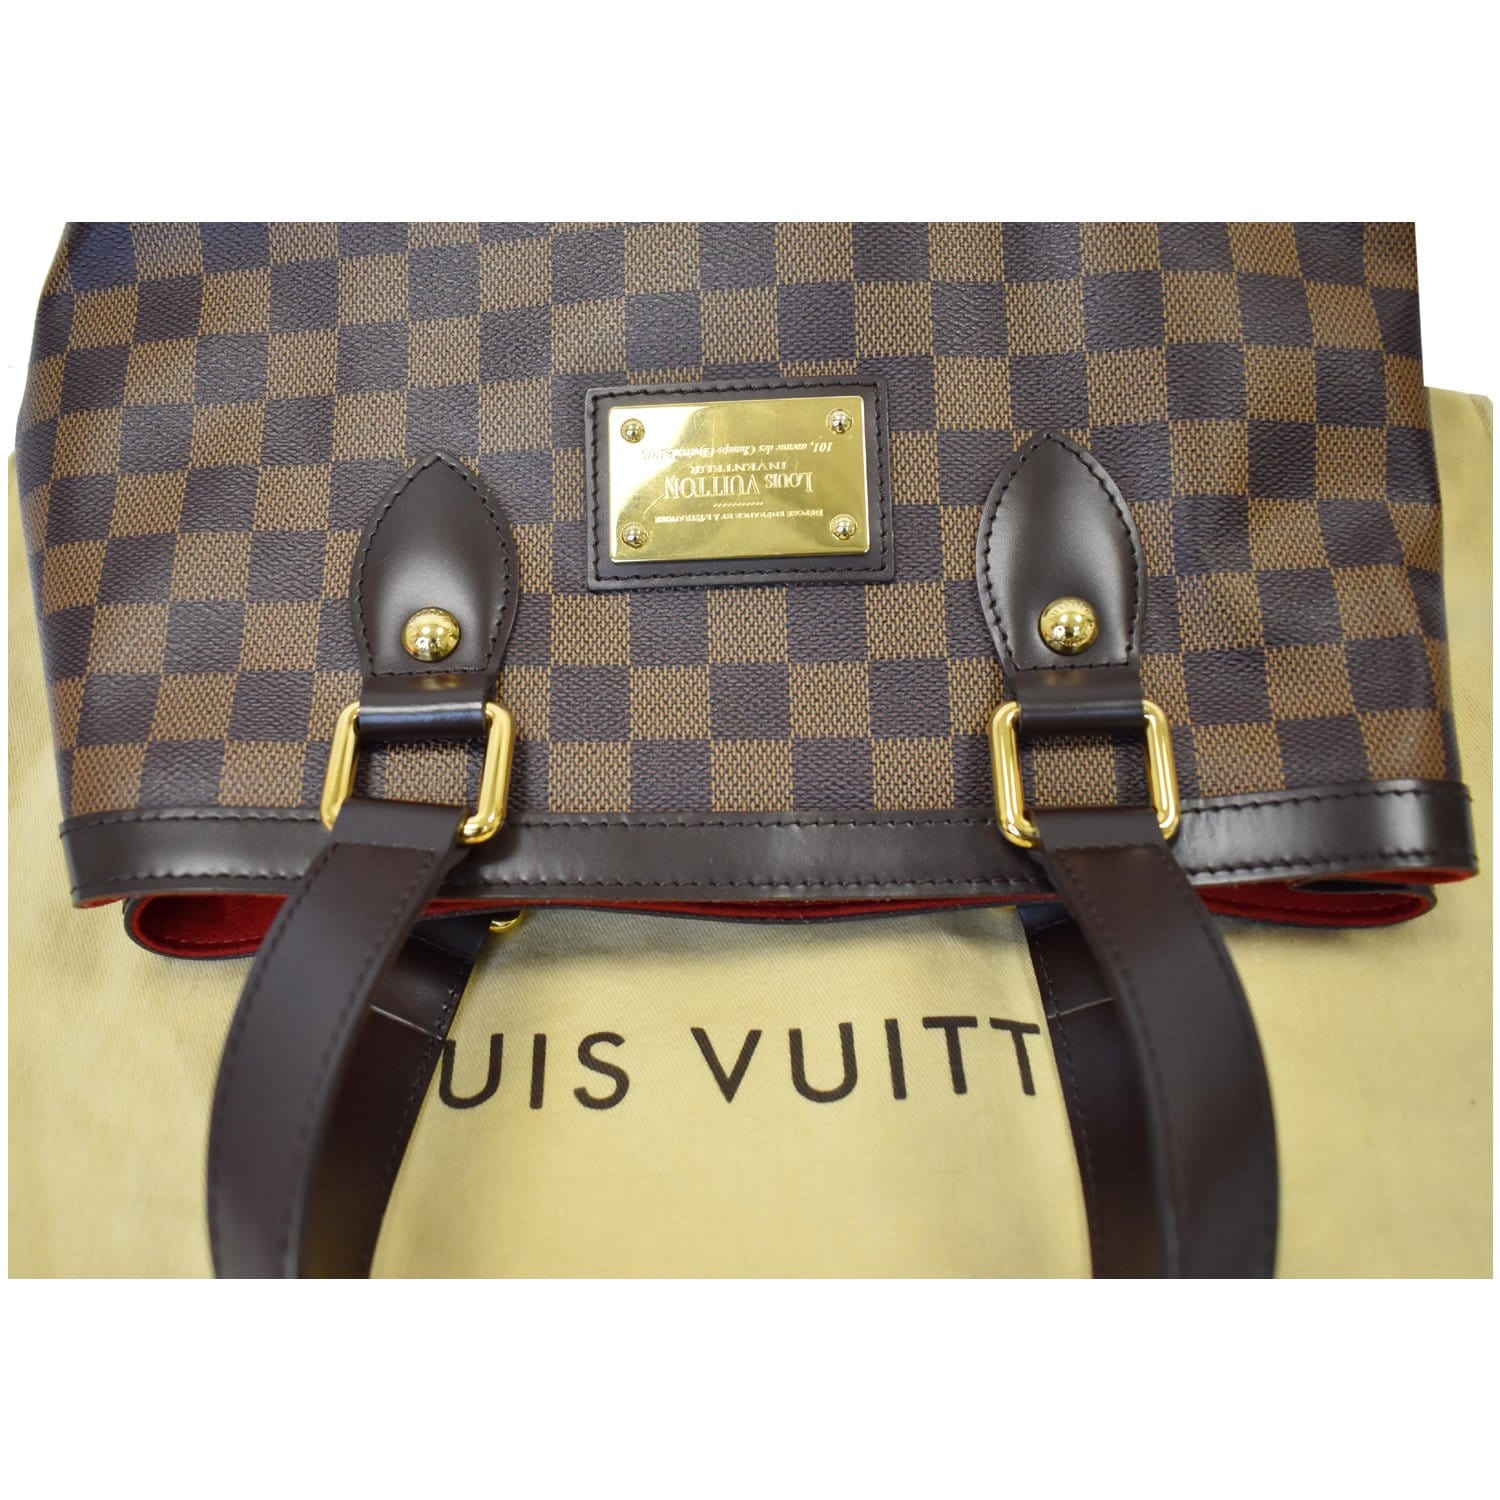 Louis Vuitton Damier Ebene Canvas Hampstead Pm  Authentic louis vuitton  bags, Louis vuitton handbags crossbody, Designer bags louis vuitton